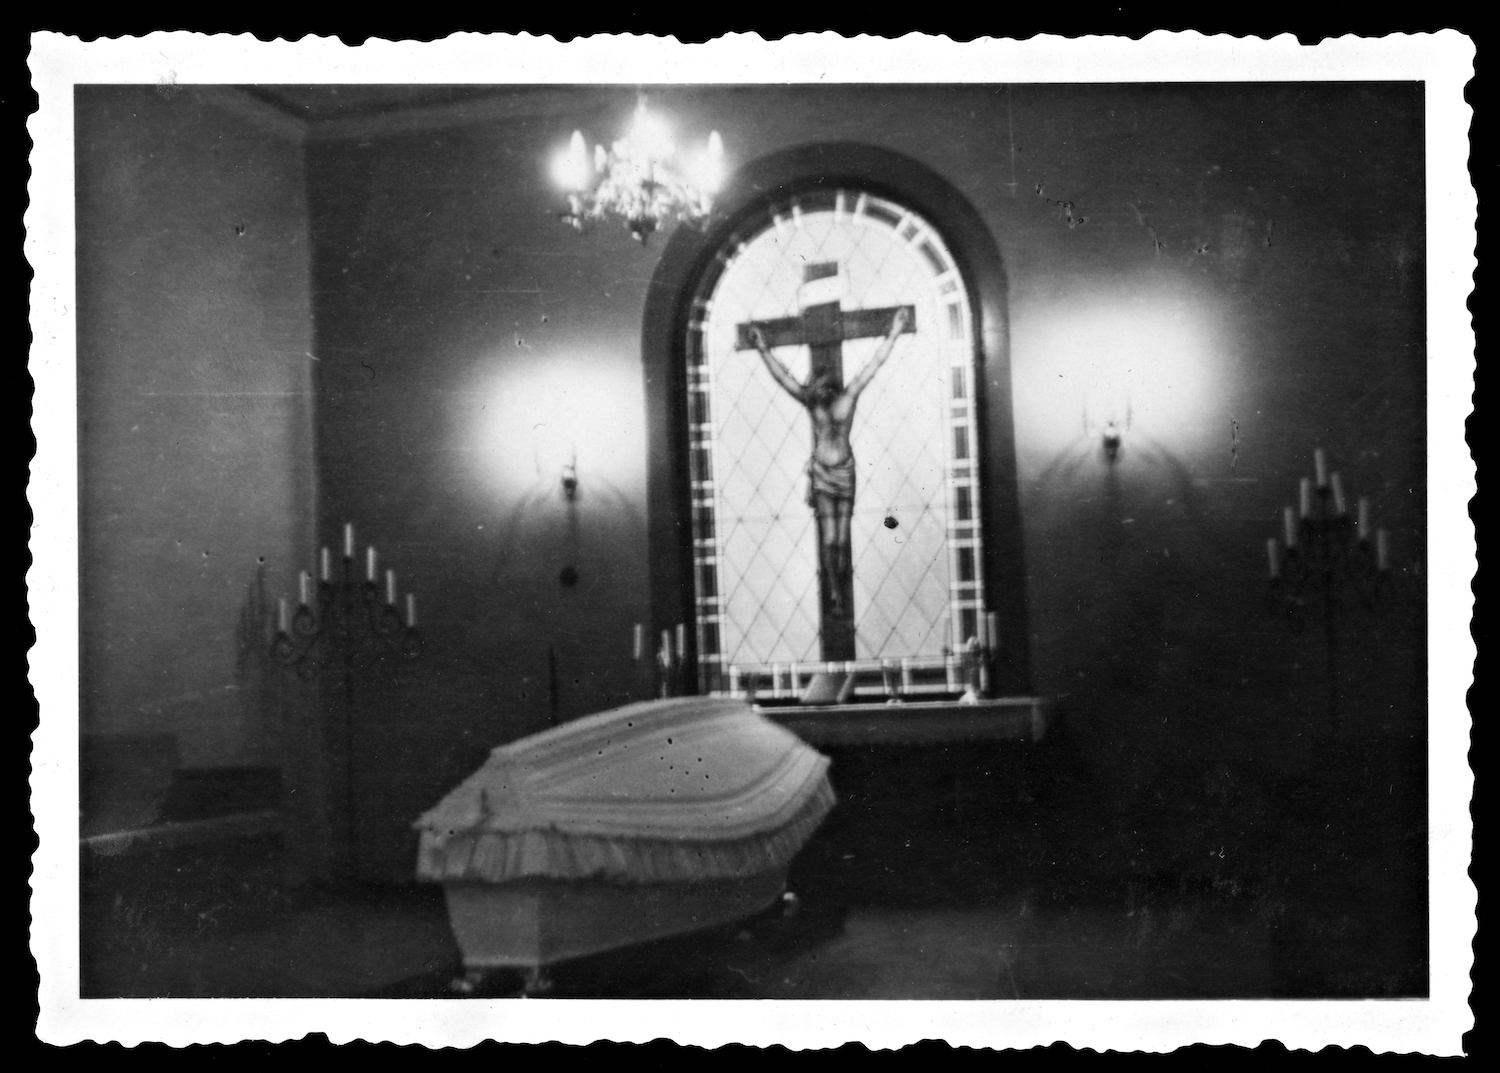 Lapinlahden sairaala. Valkoisella kangaspäällysteellä koristeltu ruumisarkku alttarin äärellä. Alttaritauluna on lasimaalaus ristille naulatusta Jeesuksesta. Alttarin molemmilla puolilla on lattialla seisovat seitsenhaaraiset kynttilänjalat. Kuvan alla on ruotsinkielinen teksti: kanske? 1930-luku.